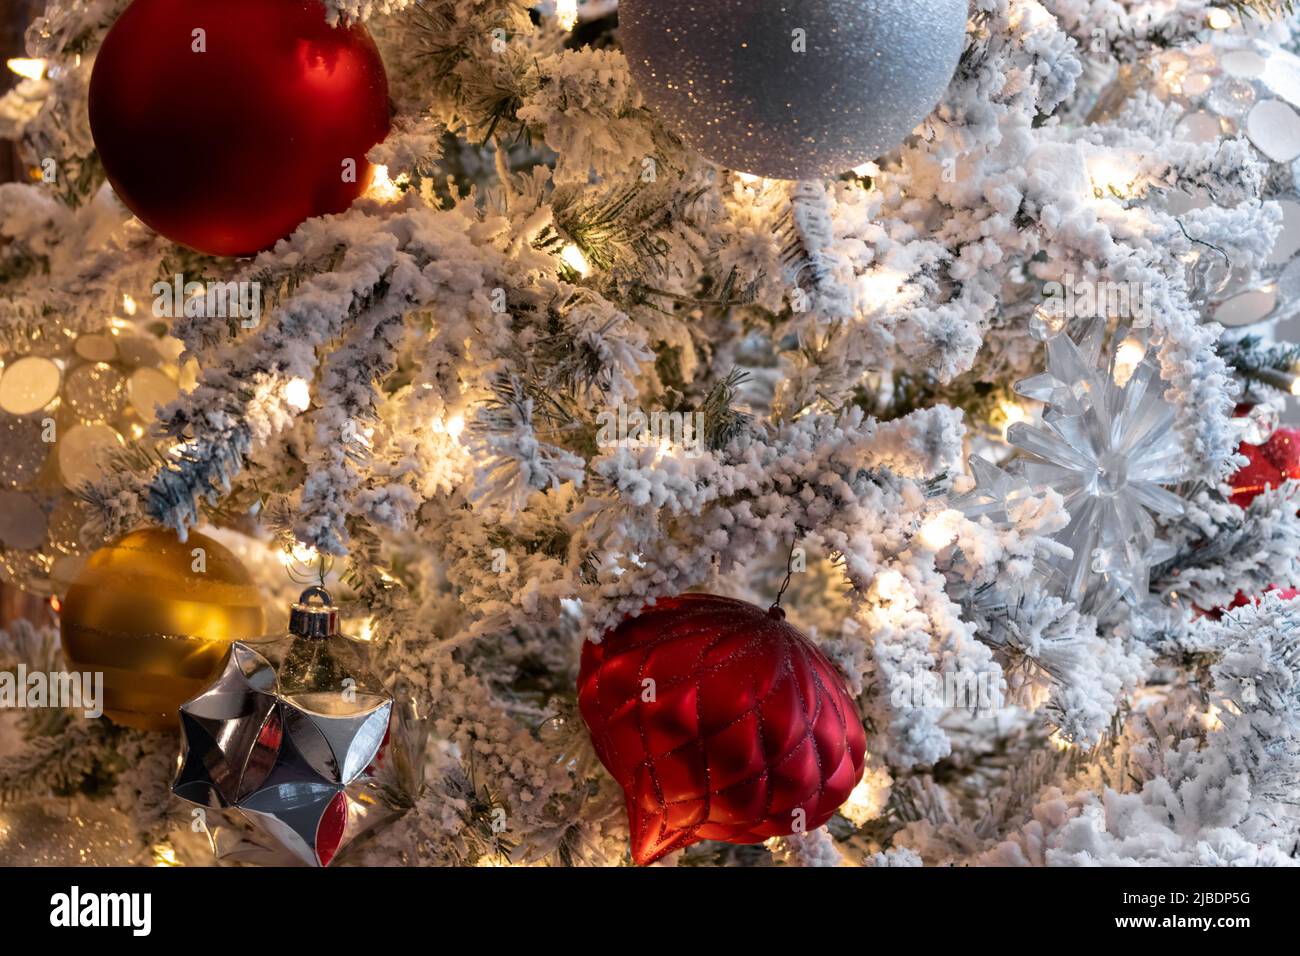 lumière chaude, scène de décoration de noël en gros plan, lumières blanches sur un arbre recouvert de neige avec des boules de noël rouges, blanches, argentées et dorées, holida festif Banque D'Images